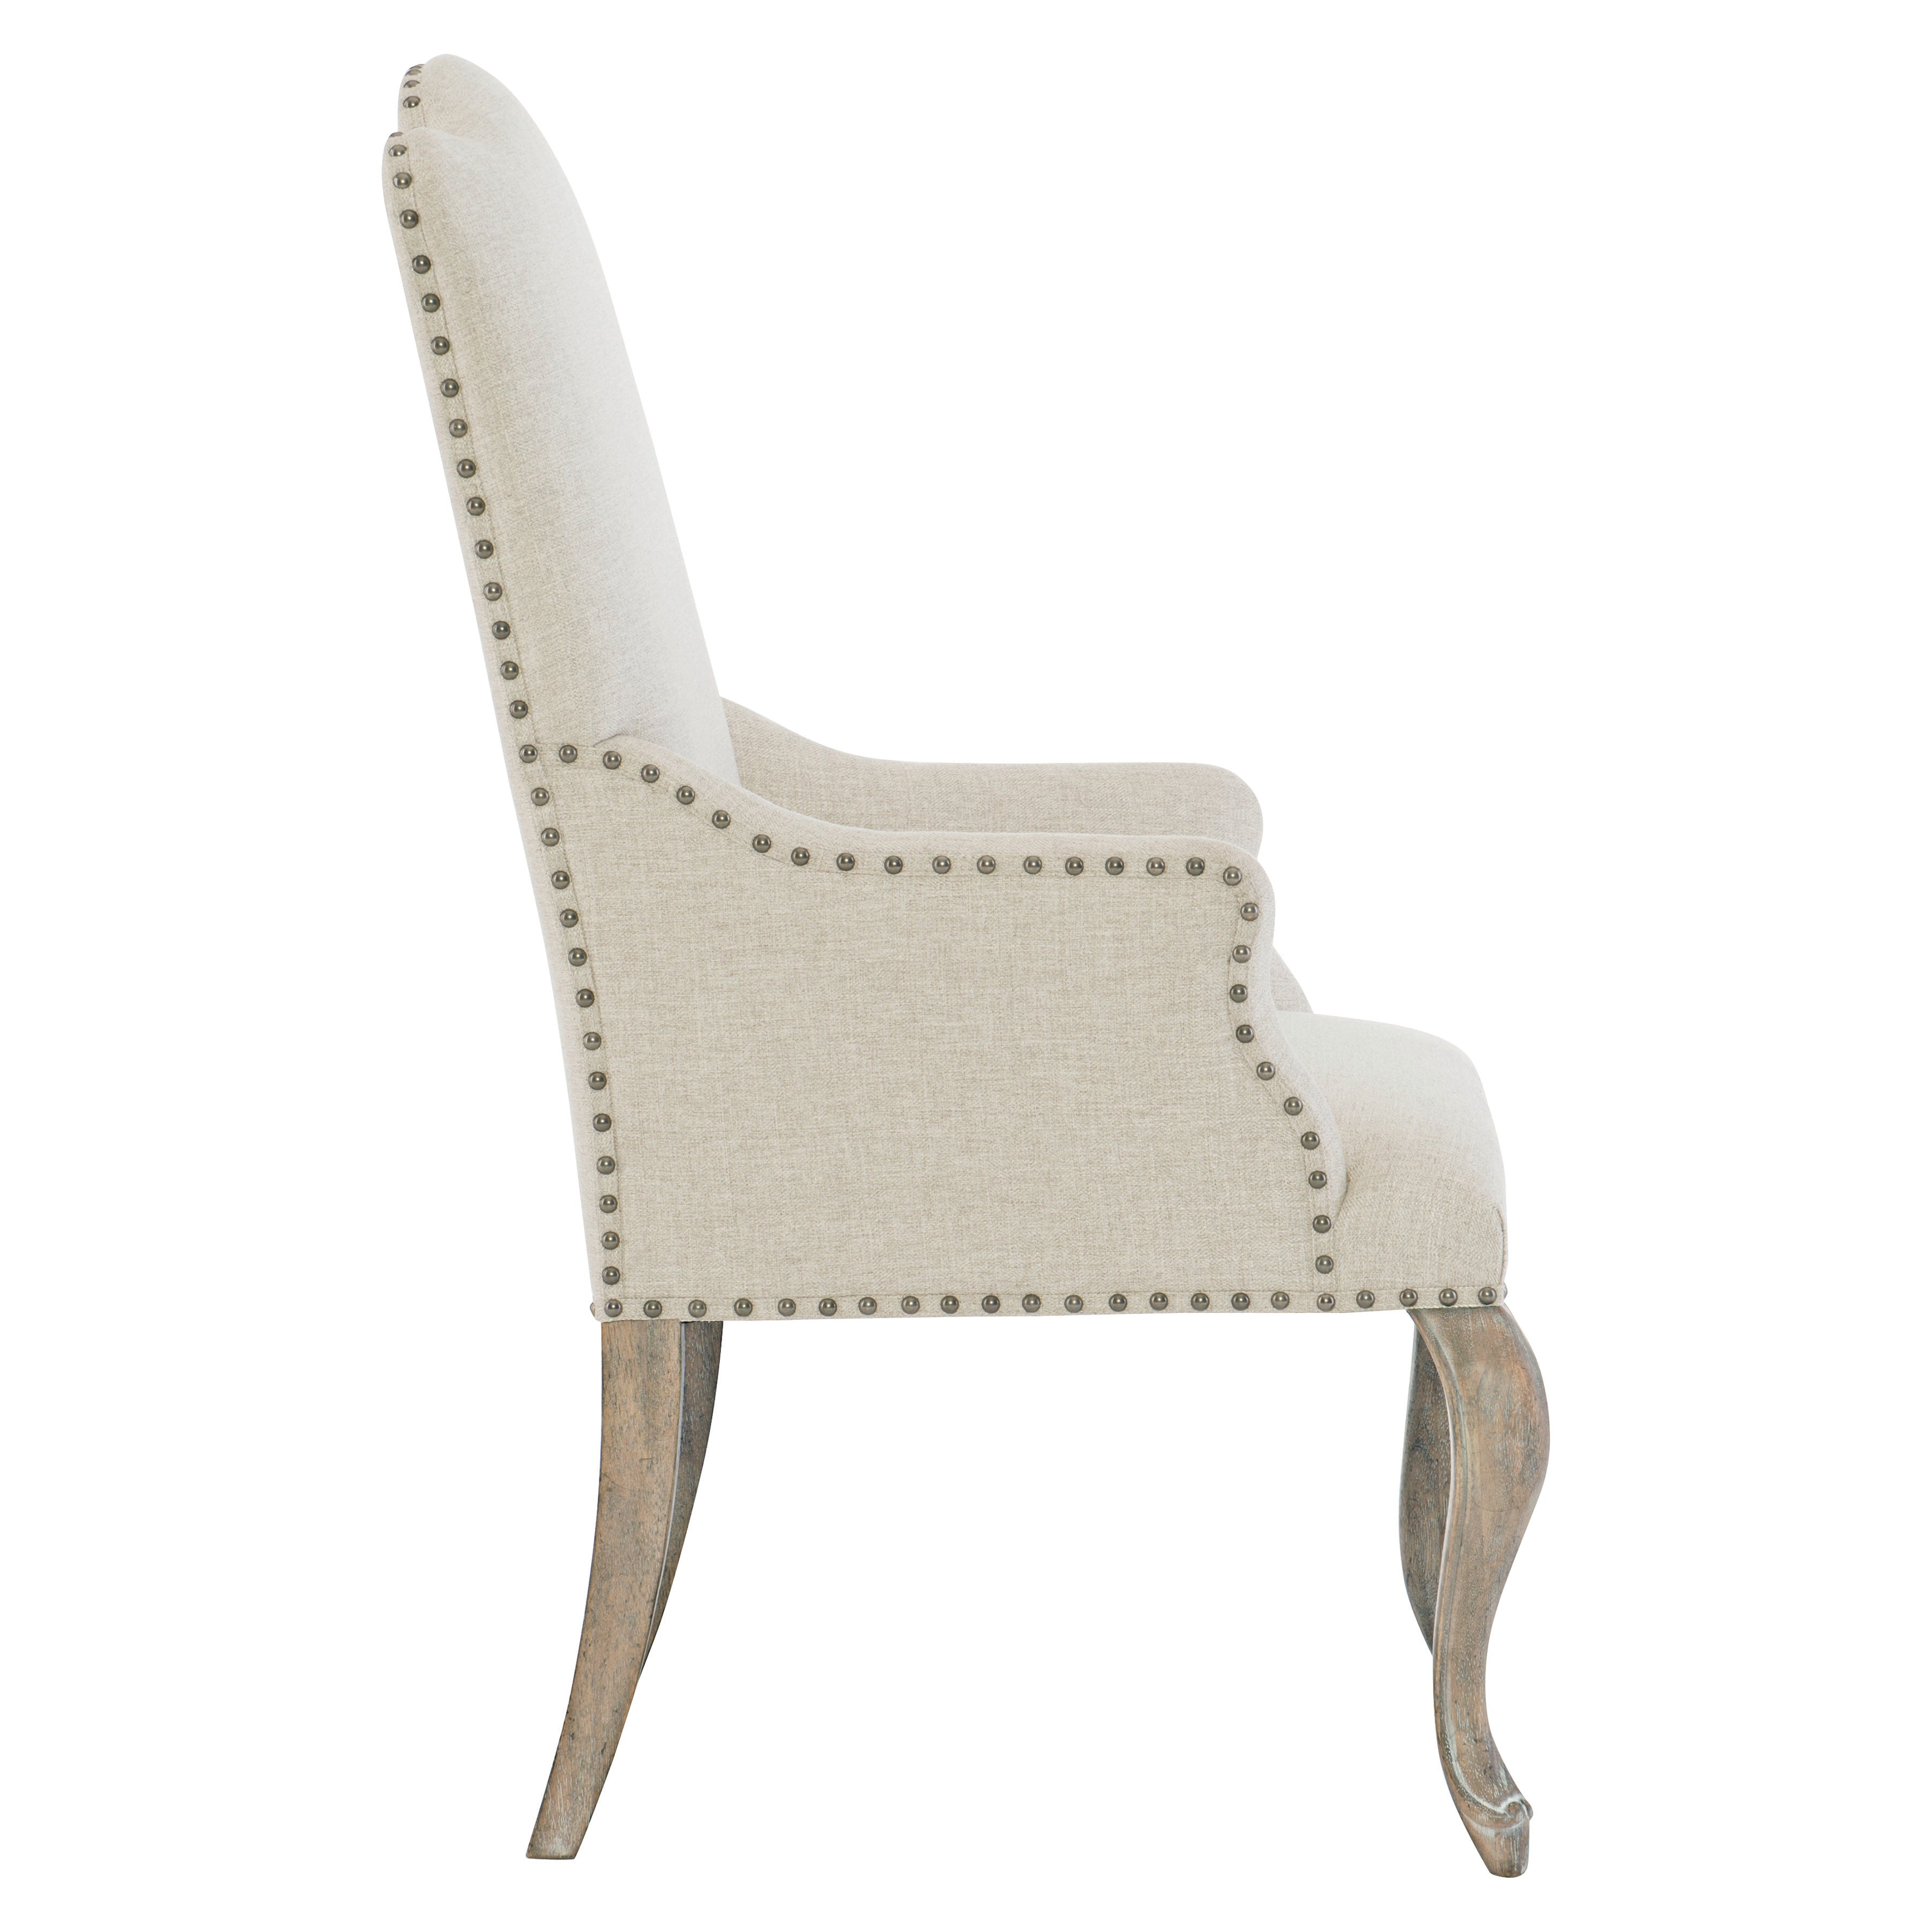 Campania Arm Chair